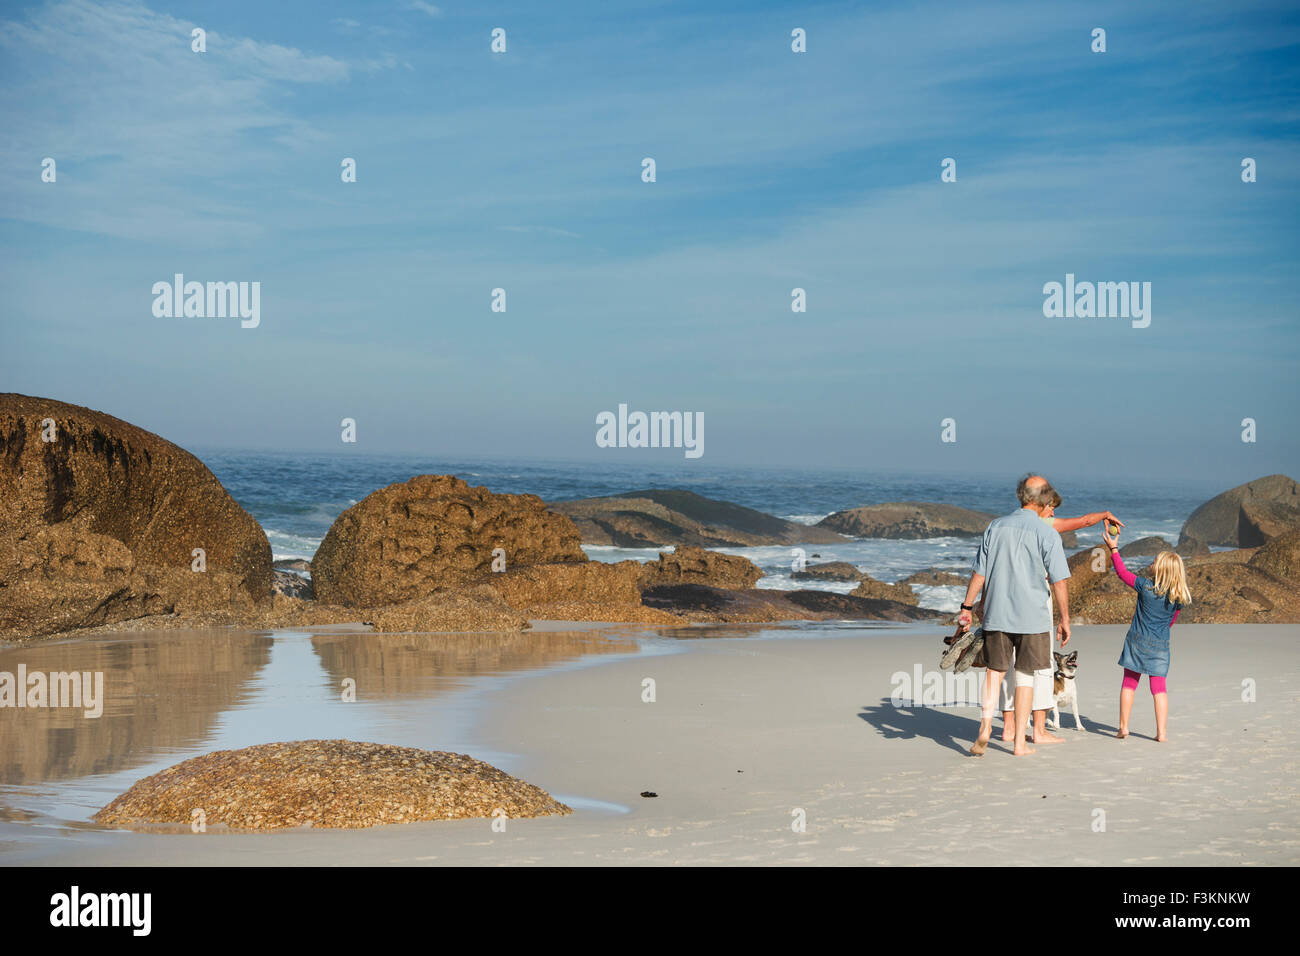 Familia en la playa de la Bahía del campamento al amanecer, Océano Atlántico, olas rompiendo en rocas de granito, Cape Town, Sudáfrica Foto de stock